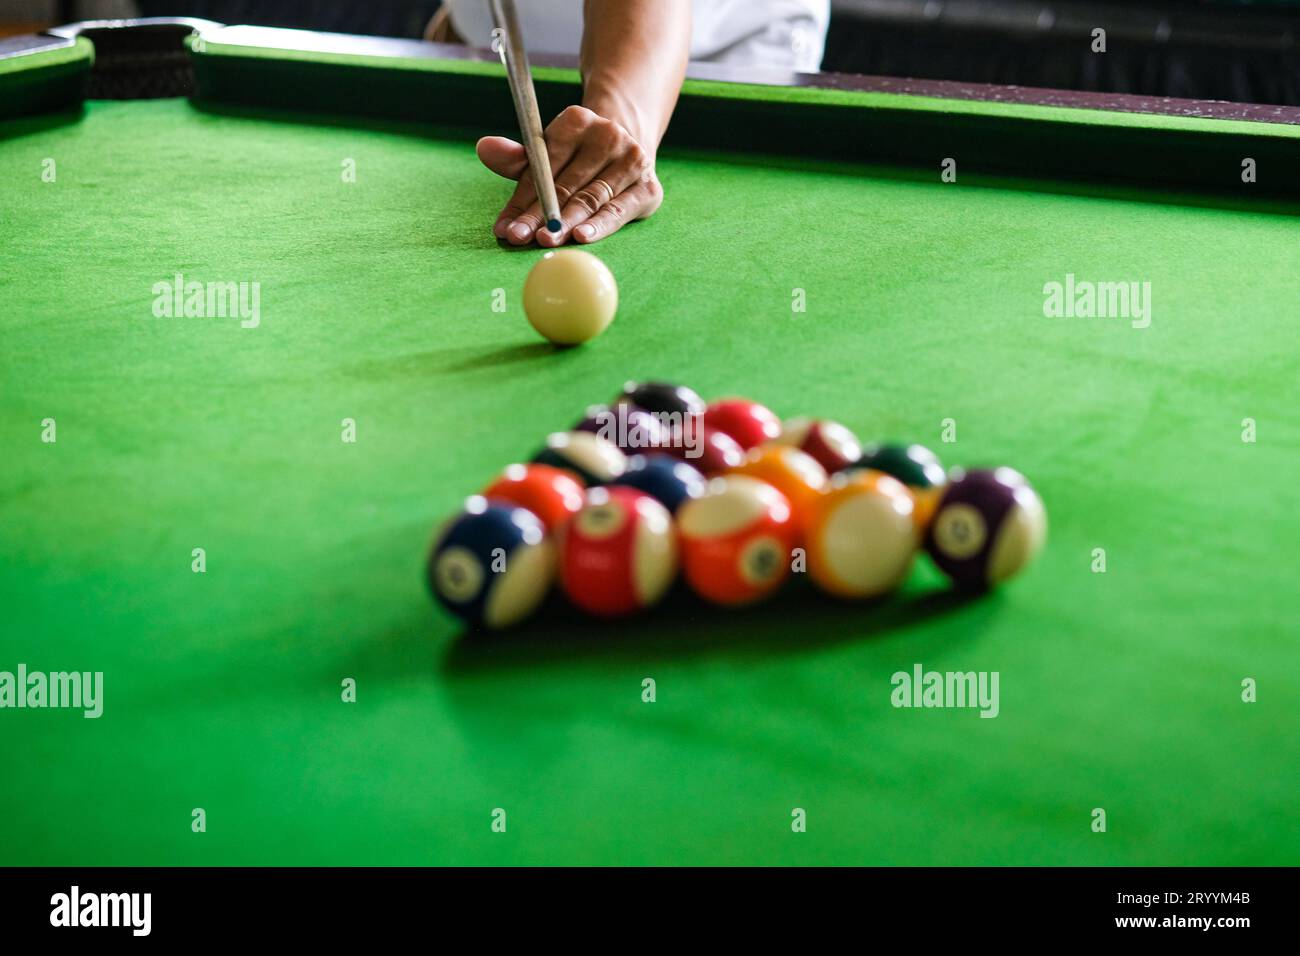 La main de l'homme et le bras de Cue jouant au jeu de snooker ou se préparant à tirer des balles de billard sur une table de billard verte. Snooker coloré Banque D'Images